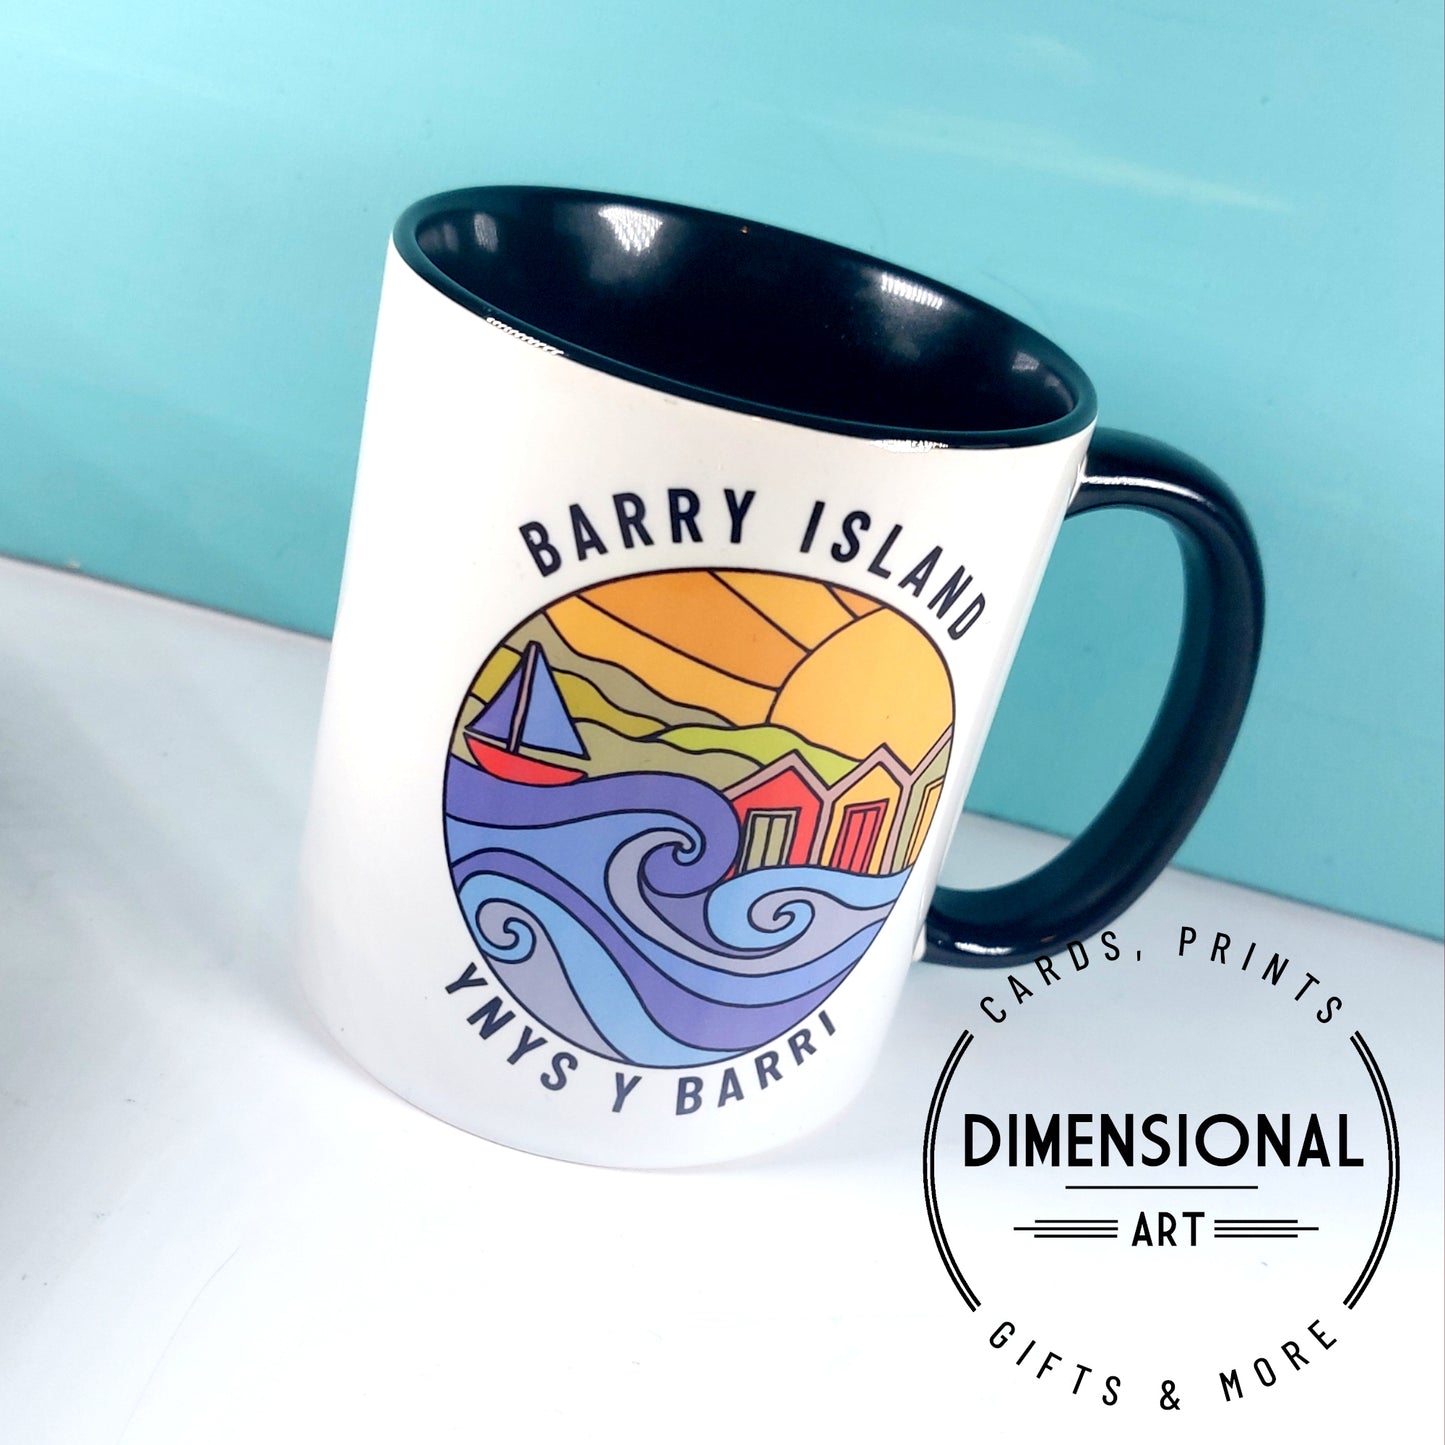 Barry Island Ynys y Barri Mug